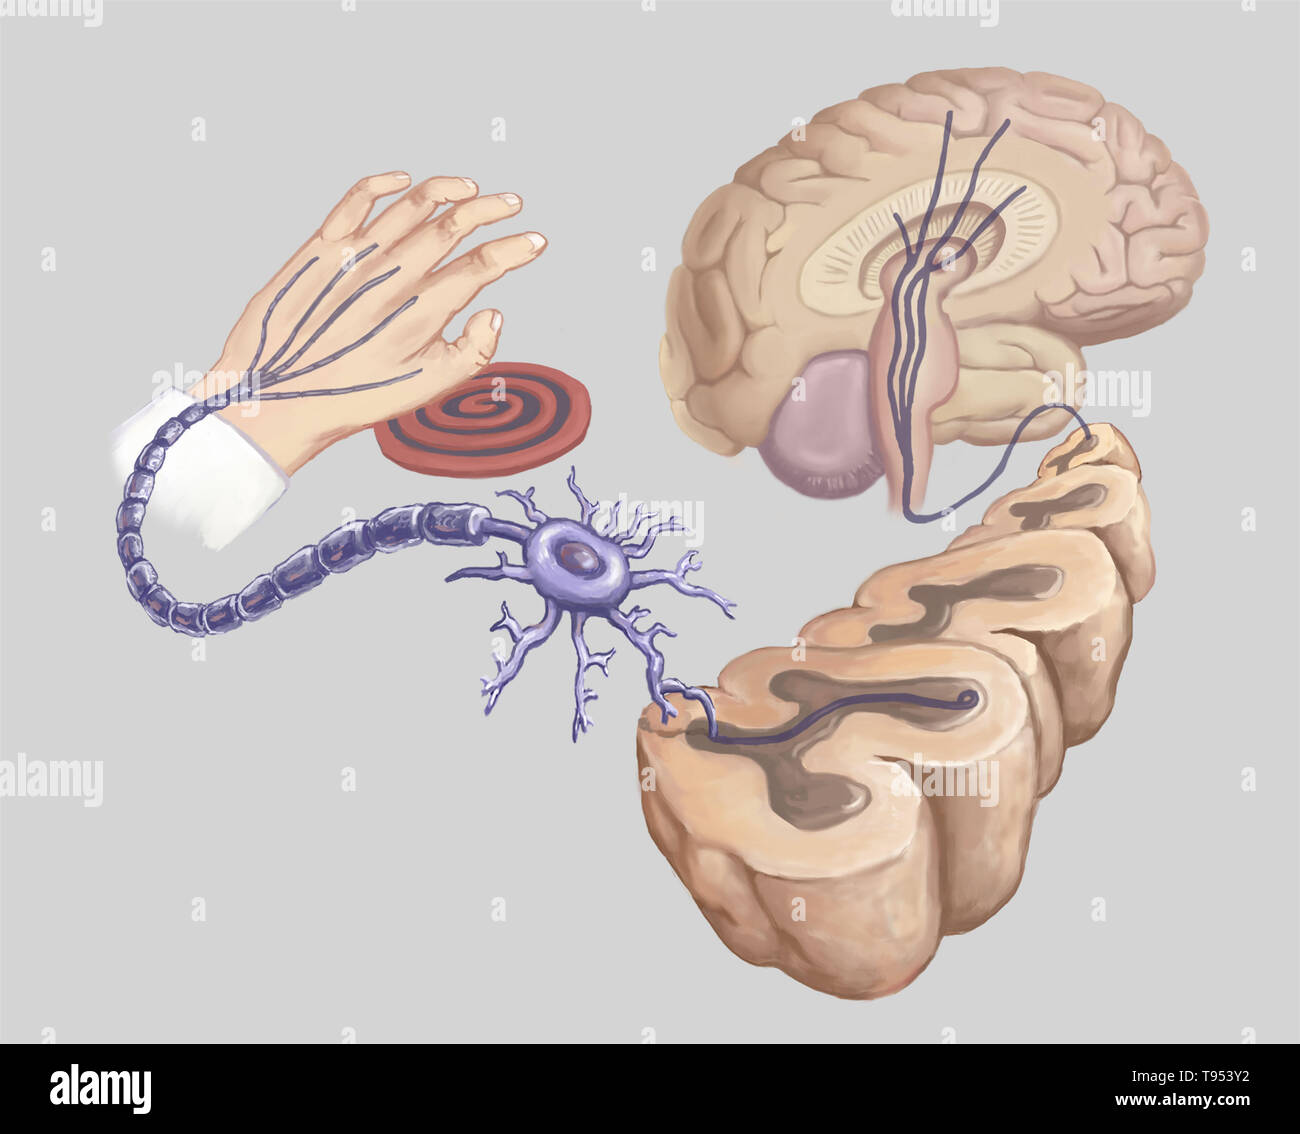 Ilustración de una mano al tocar una estufa caliente elemento y reacción en los circuitos neurales del cuerpo. Foto de stock